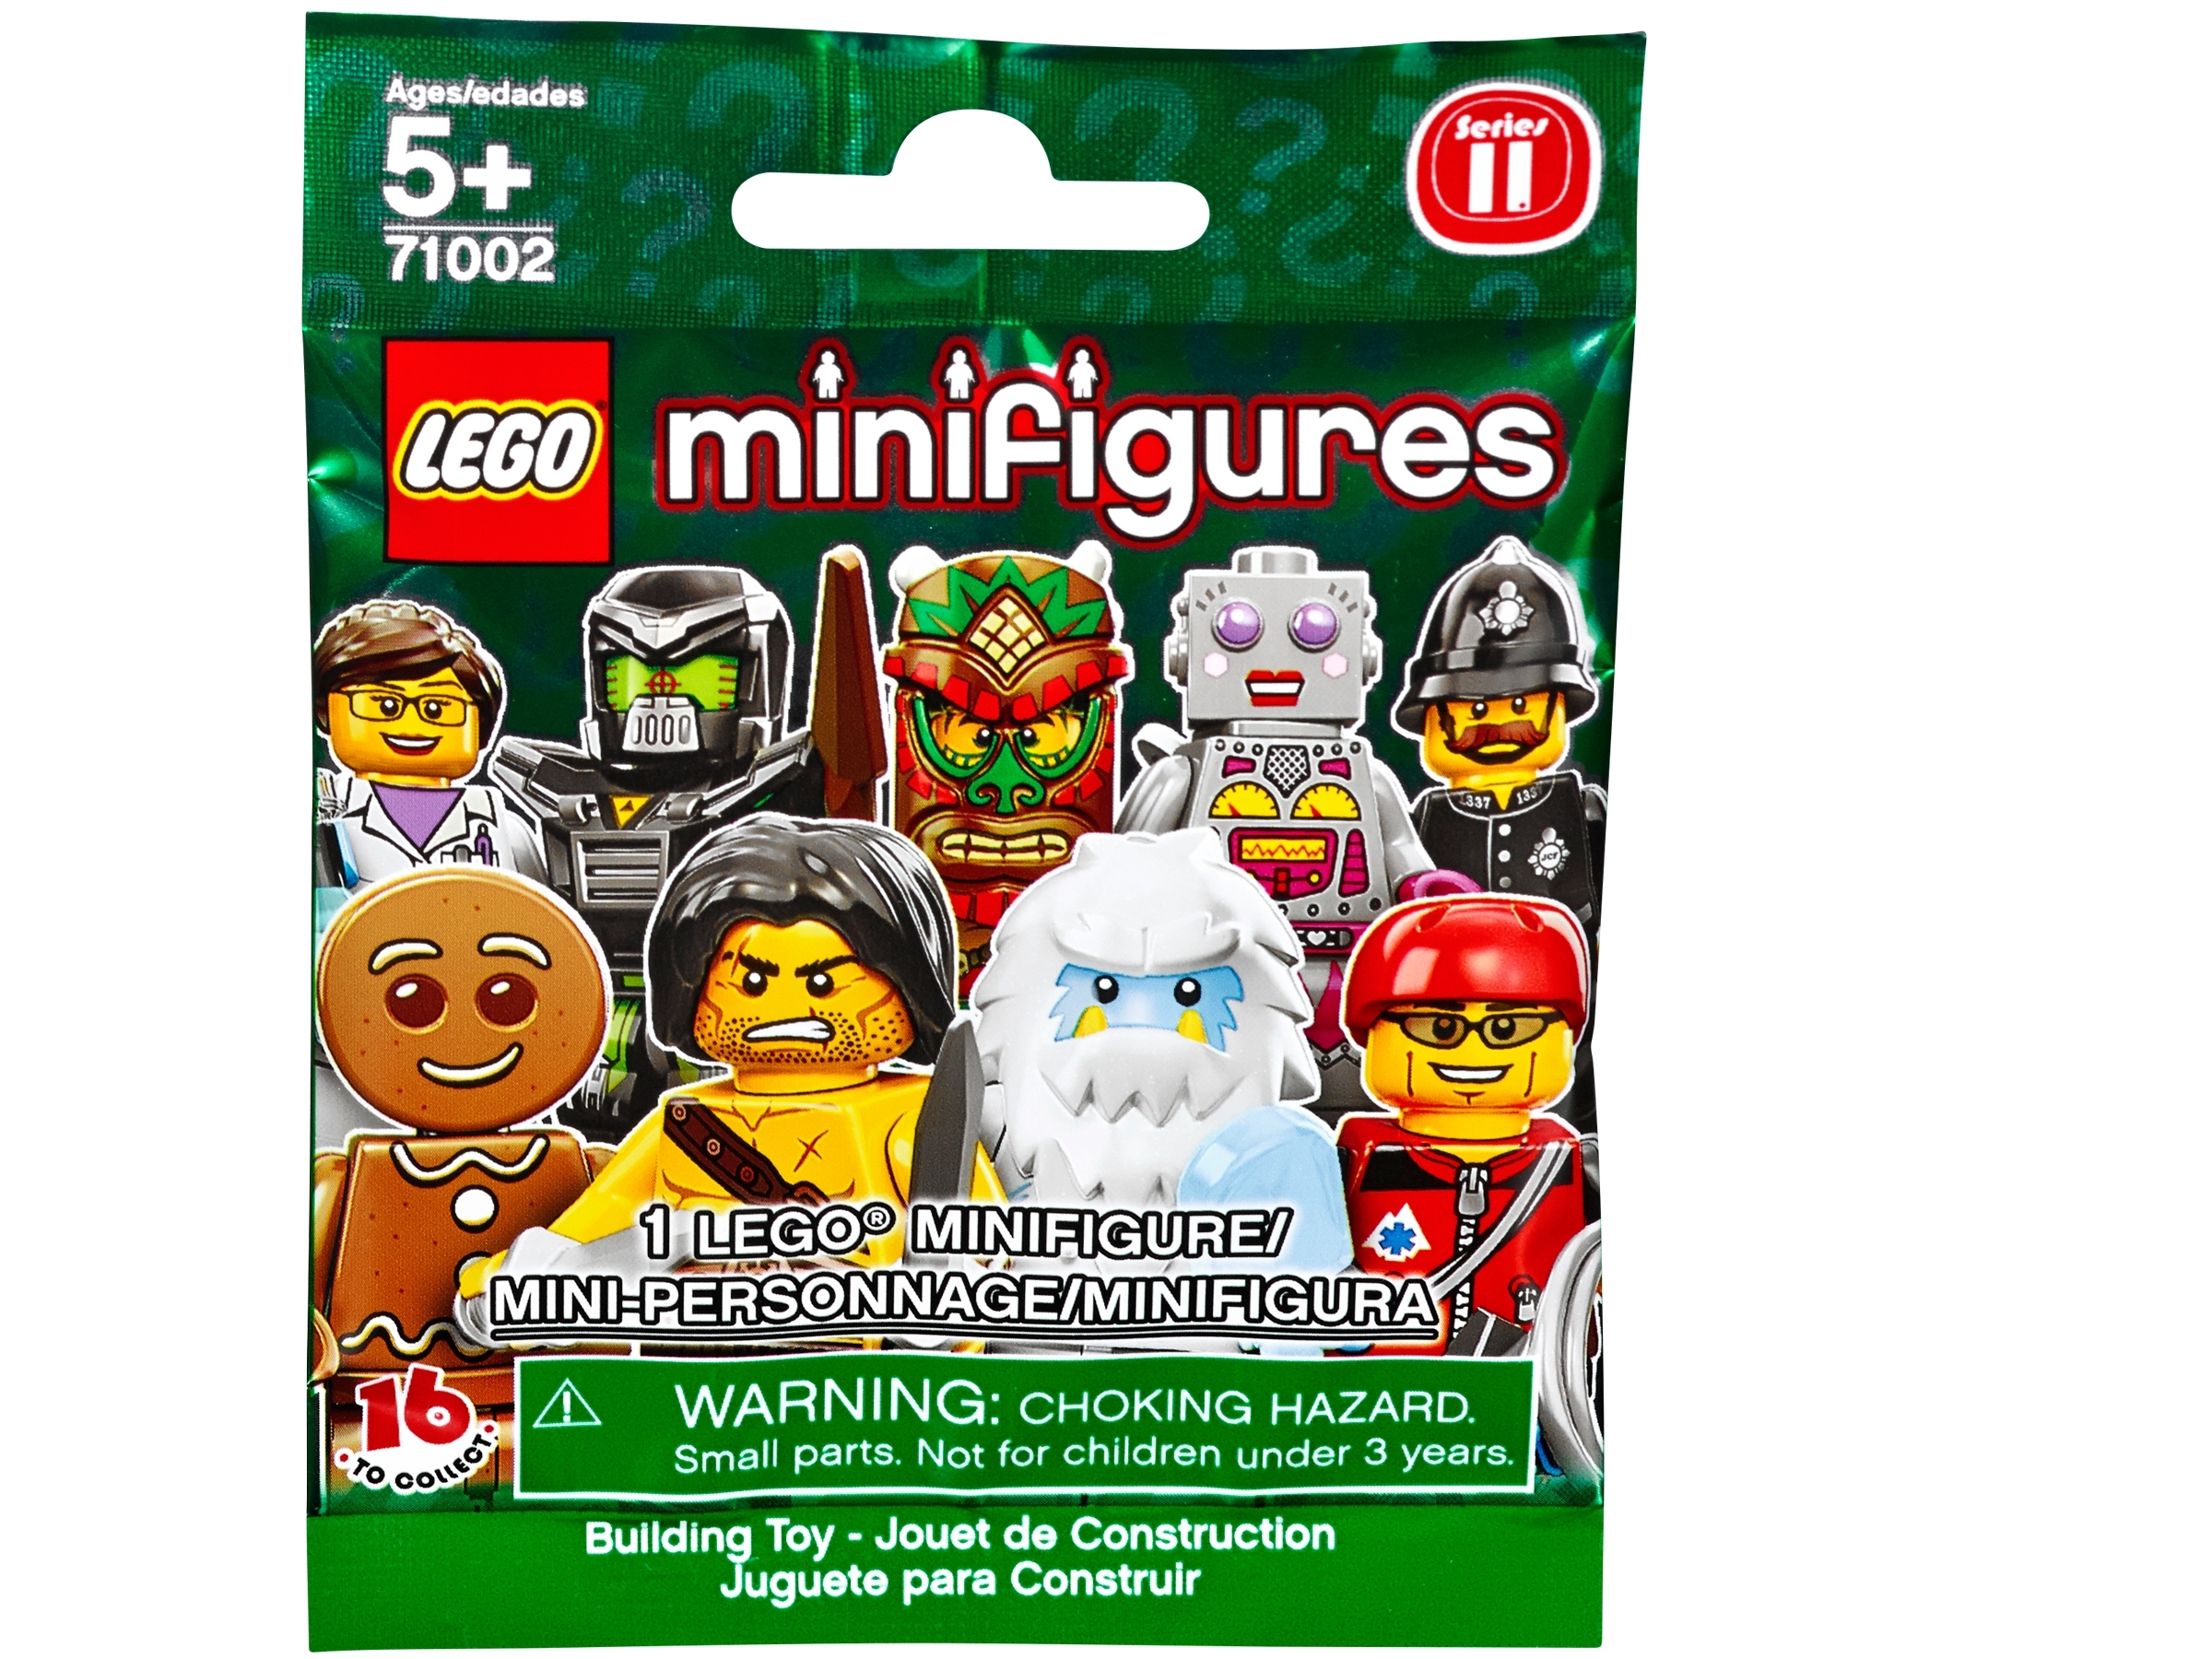 Scarecrow LEGO MINIFIGURES SERIES 11 71002